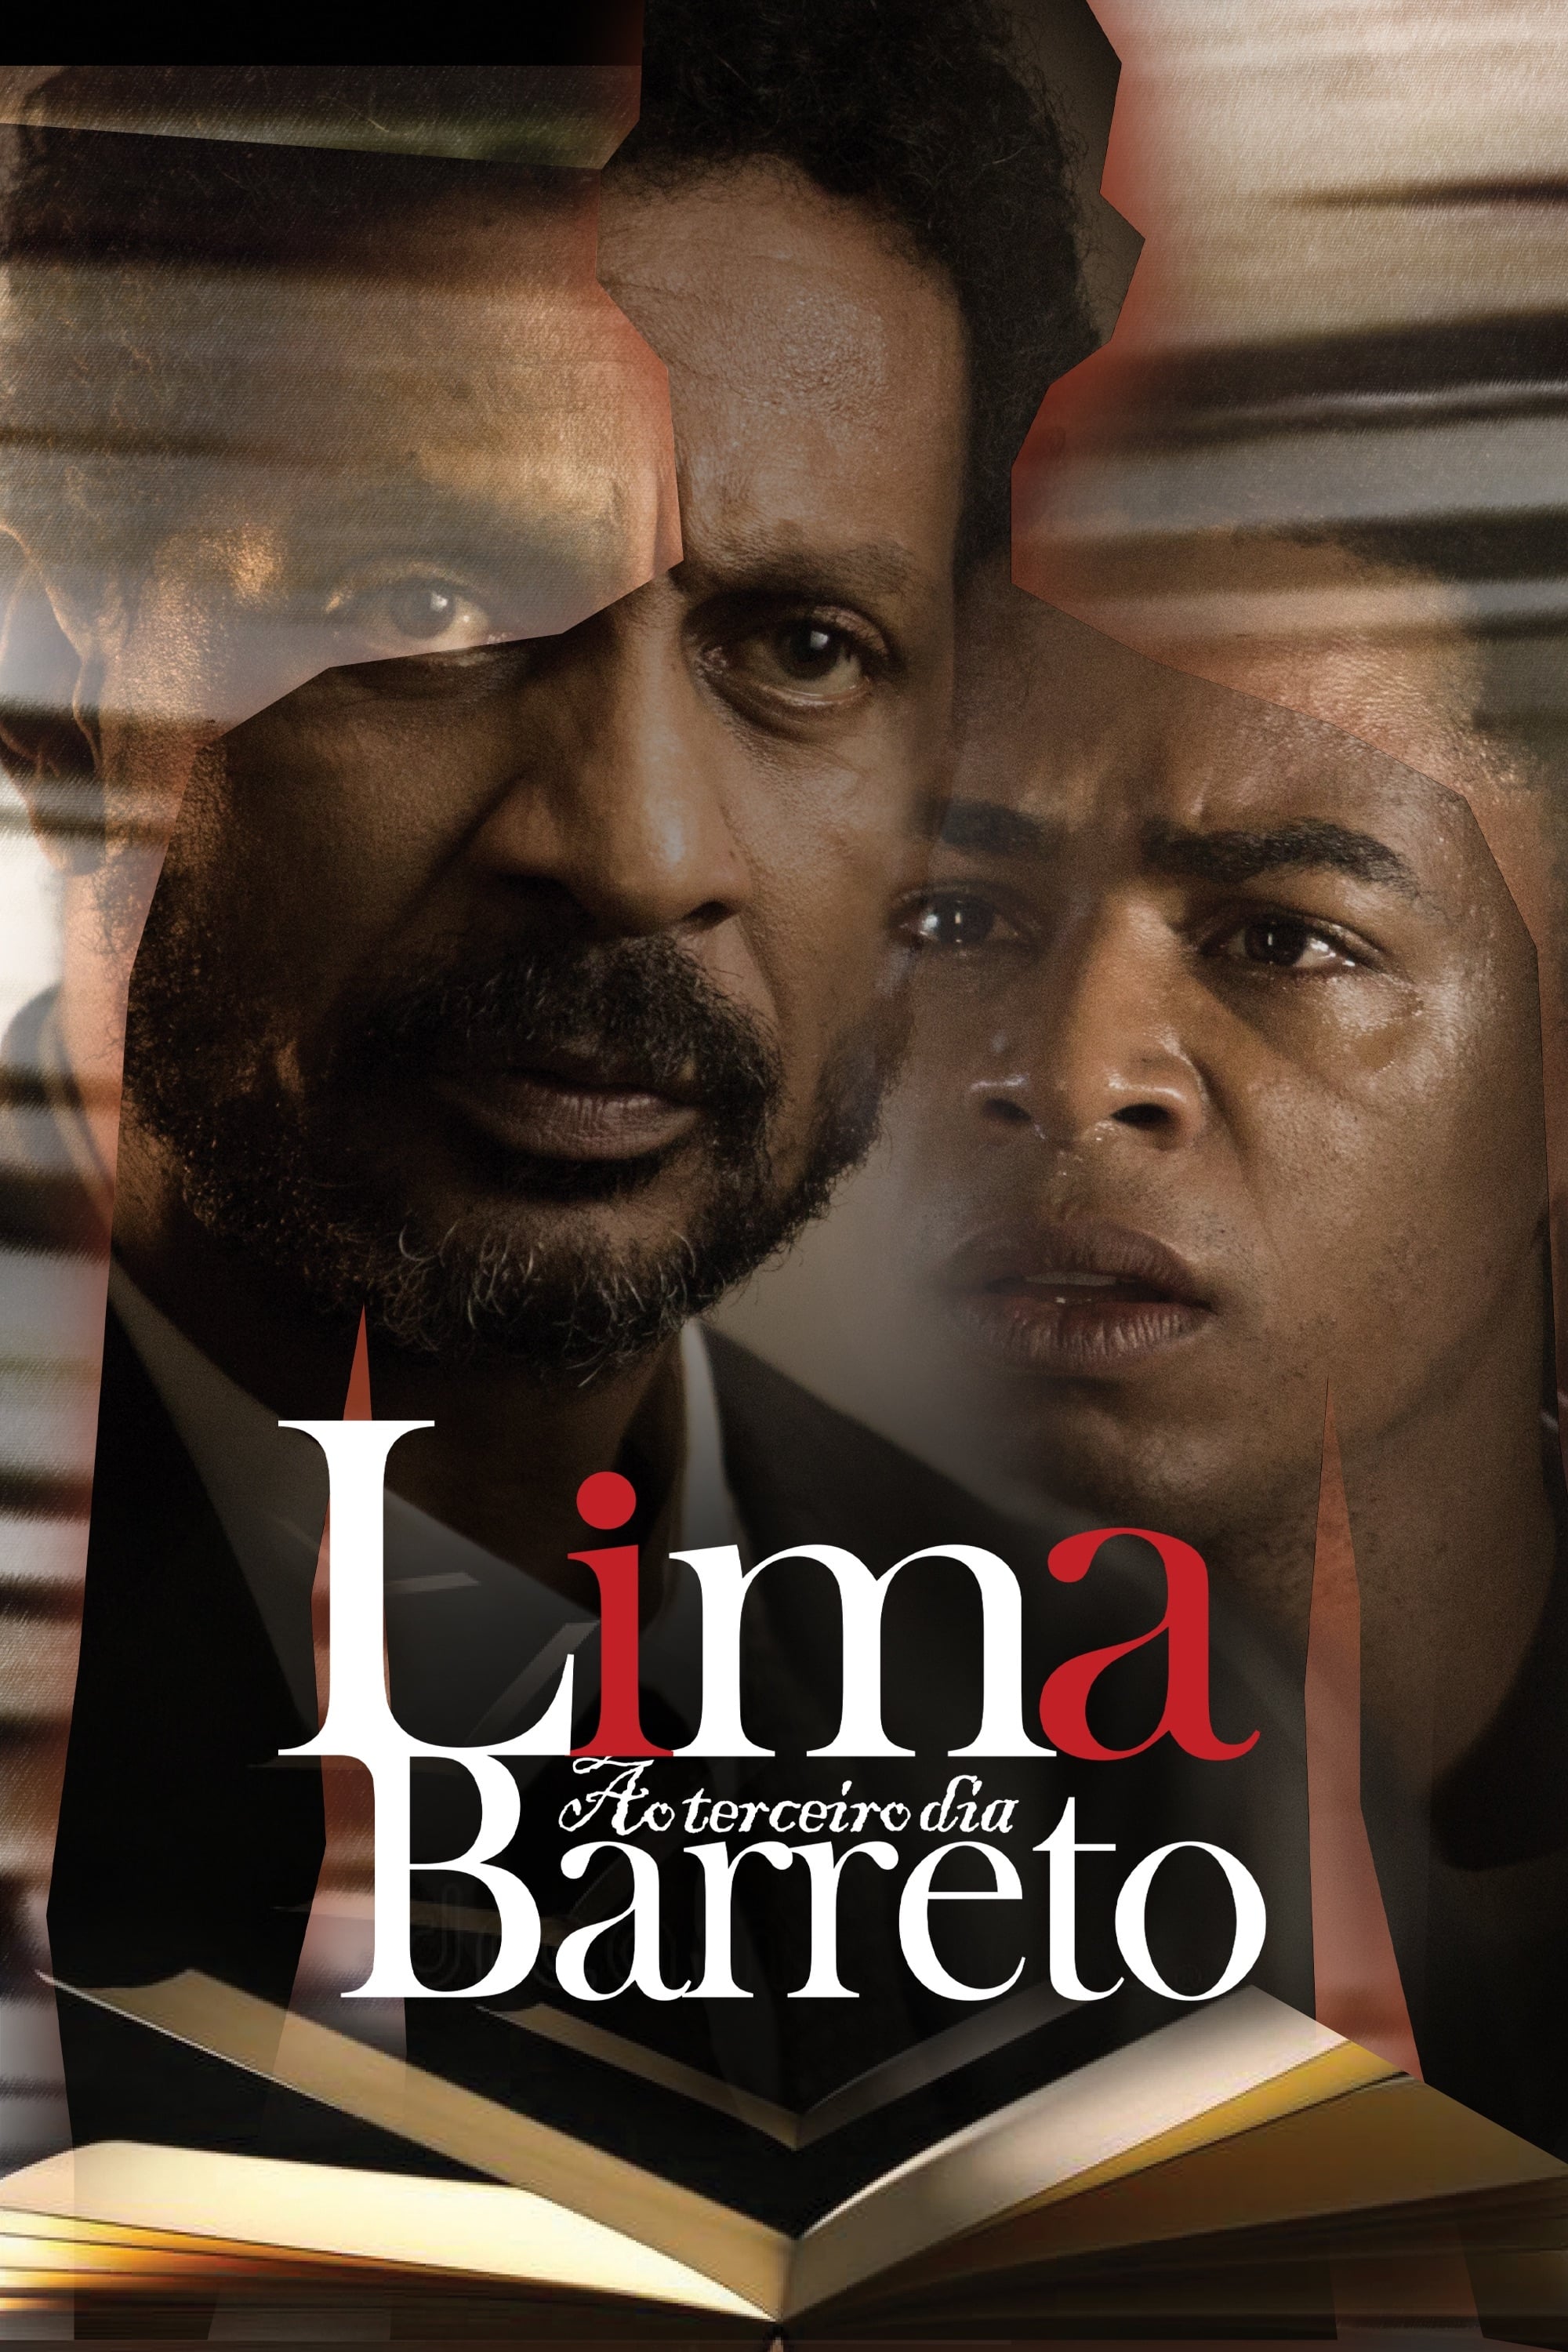 Lima Barreto ao Terceiro Dia film